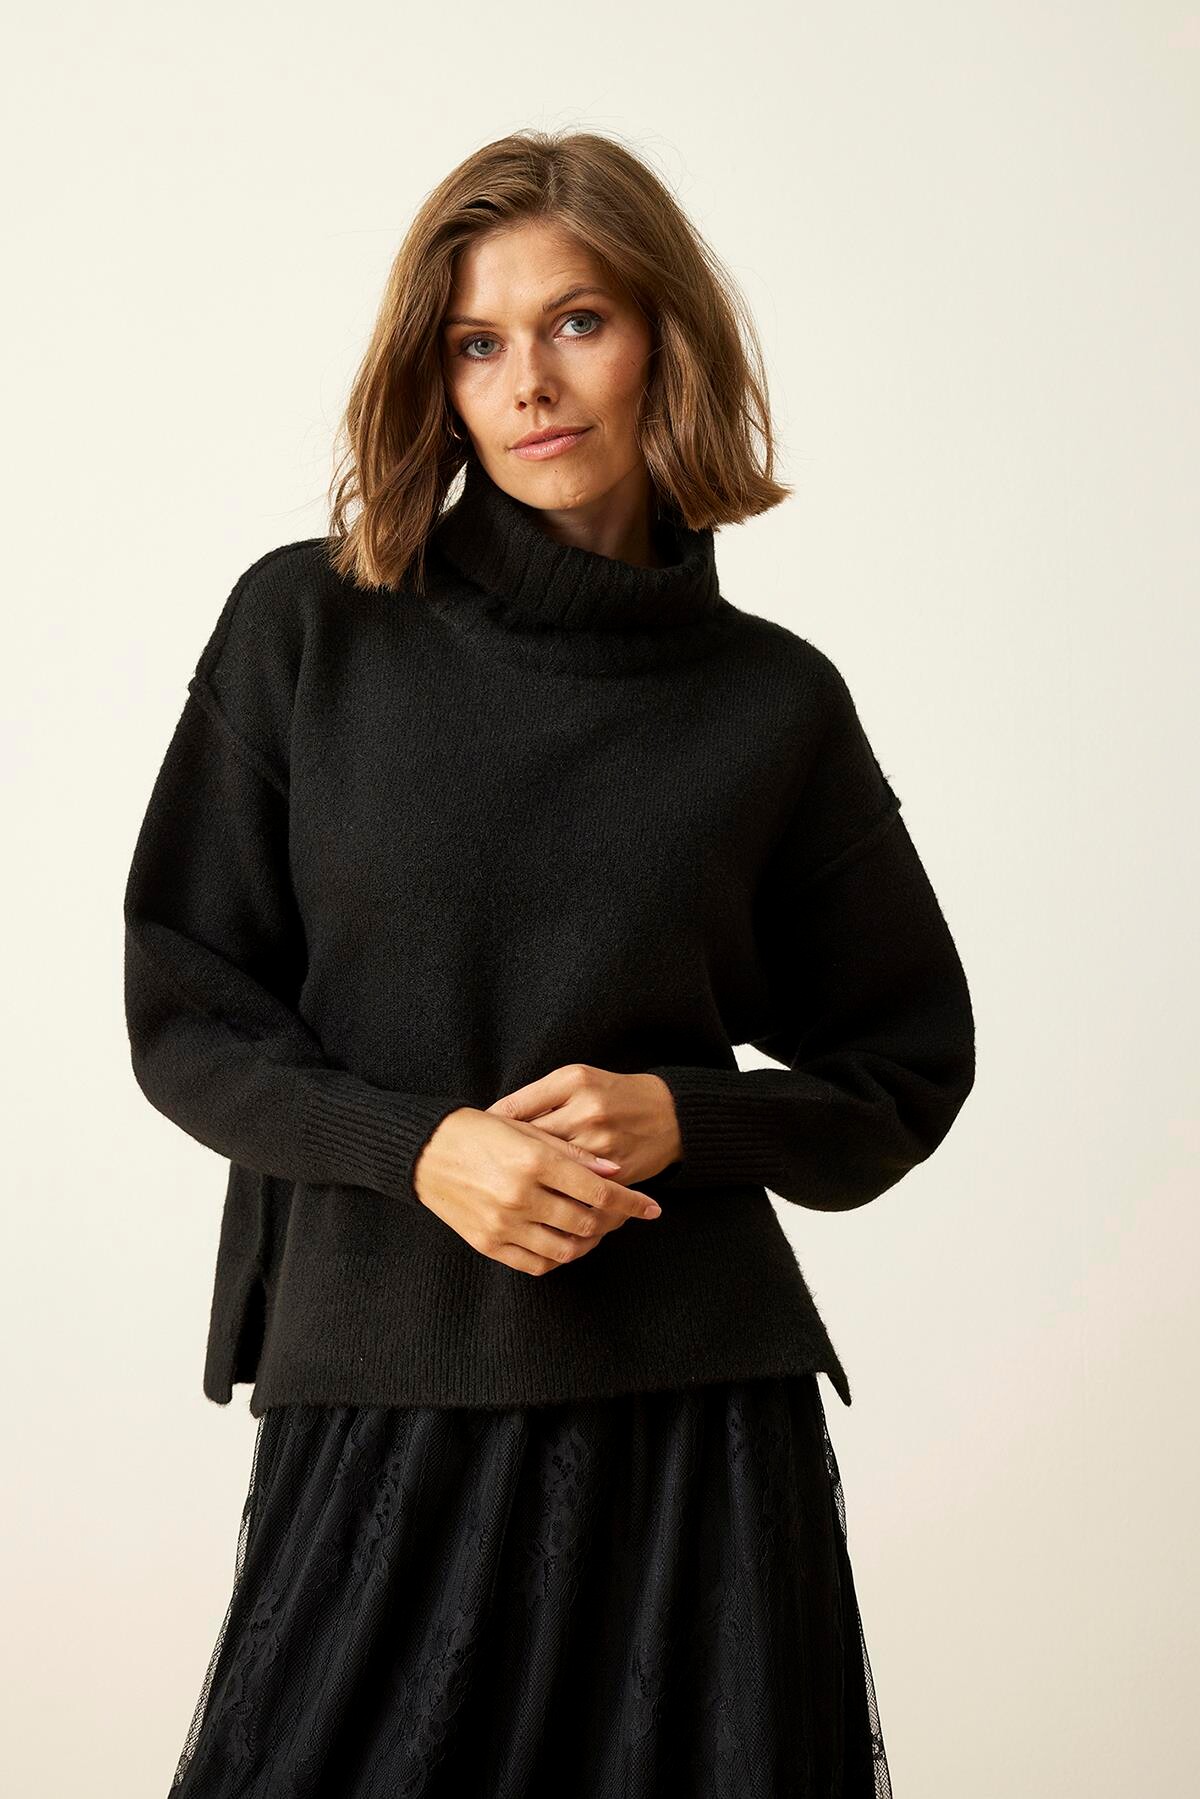 Se IN FRONT Loulou Sweater, Farve: Black, Størrelse: M, Dame hos Infront Women